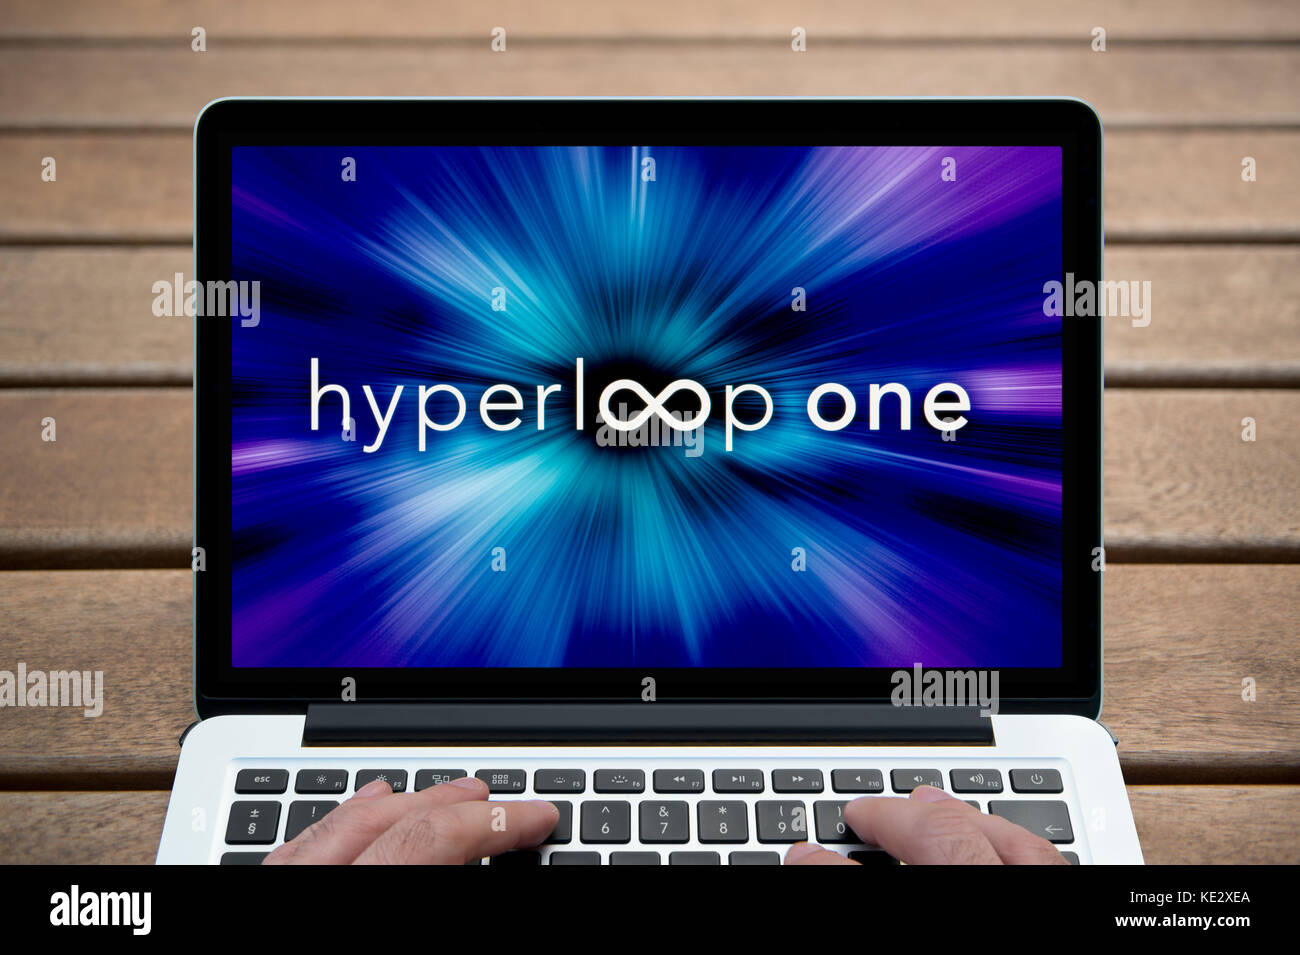 Die Hyperloop ein Logo wird auf dem Bildschirm des MacBook Pro Laptop gezeigt, Schuß gegen eine Holzbank einschließlich der Finger des Mannes (nur redaktionell). Stockfoto